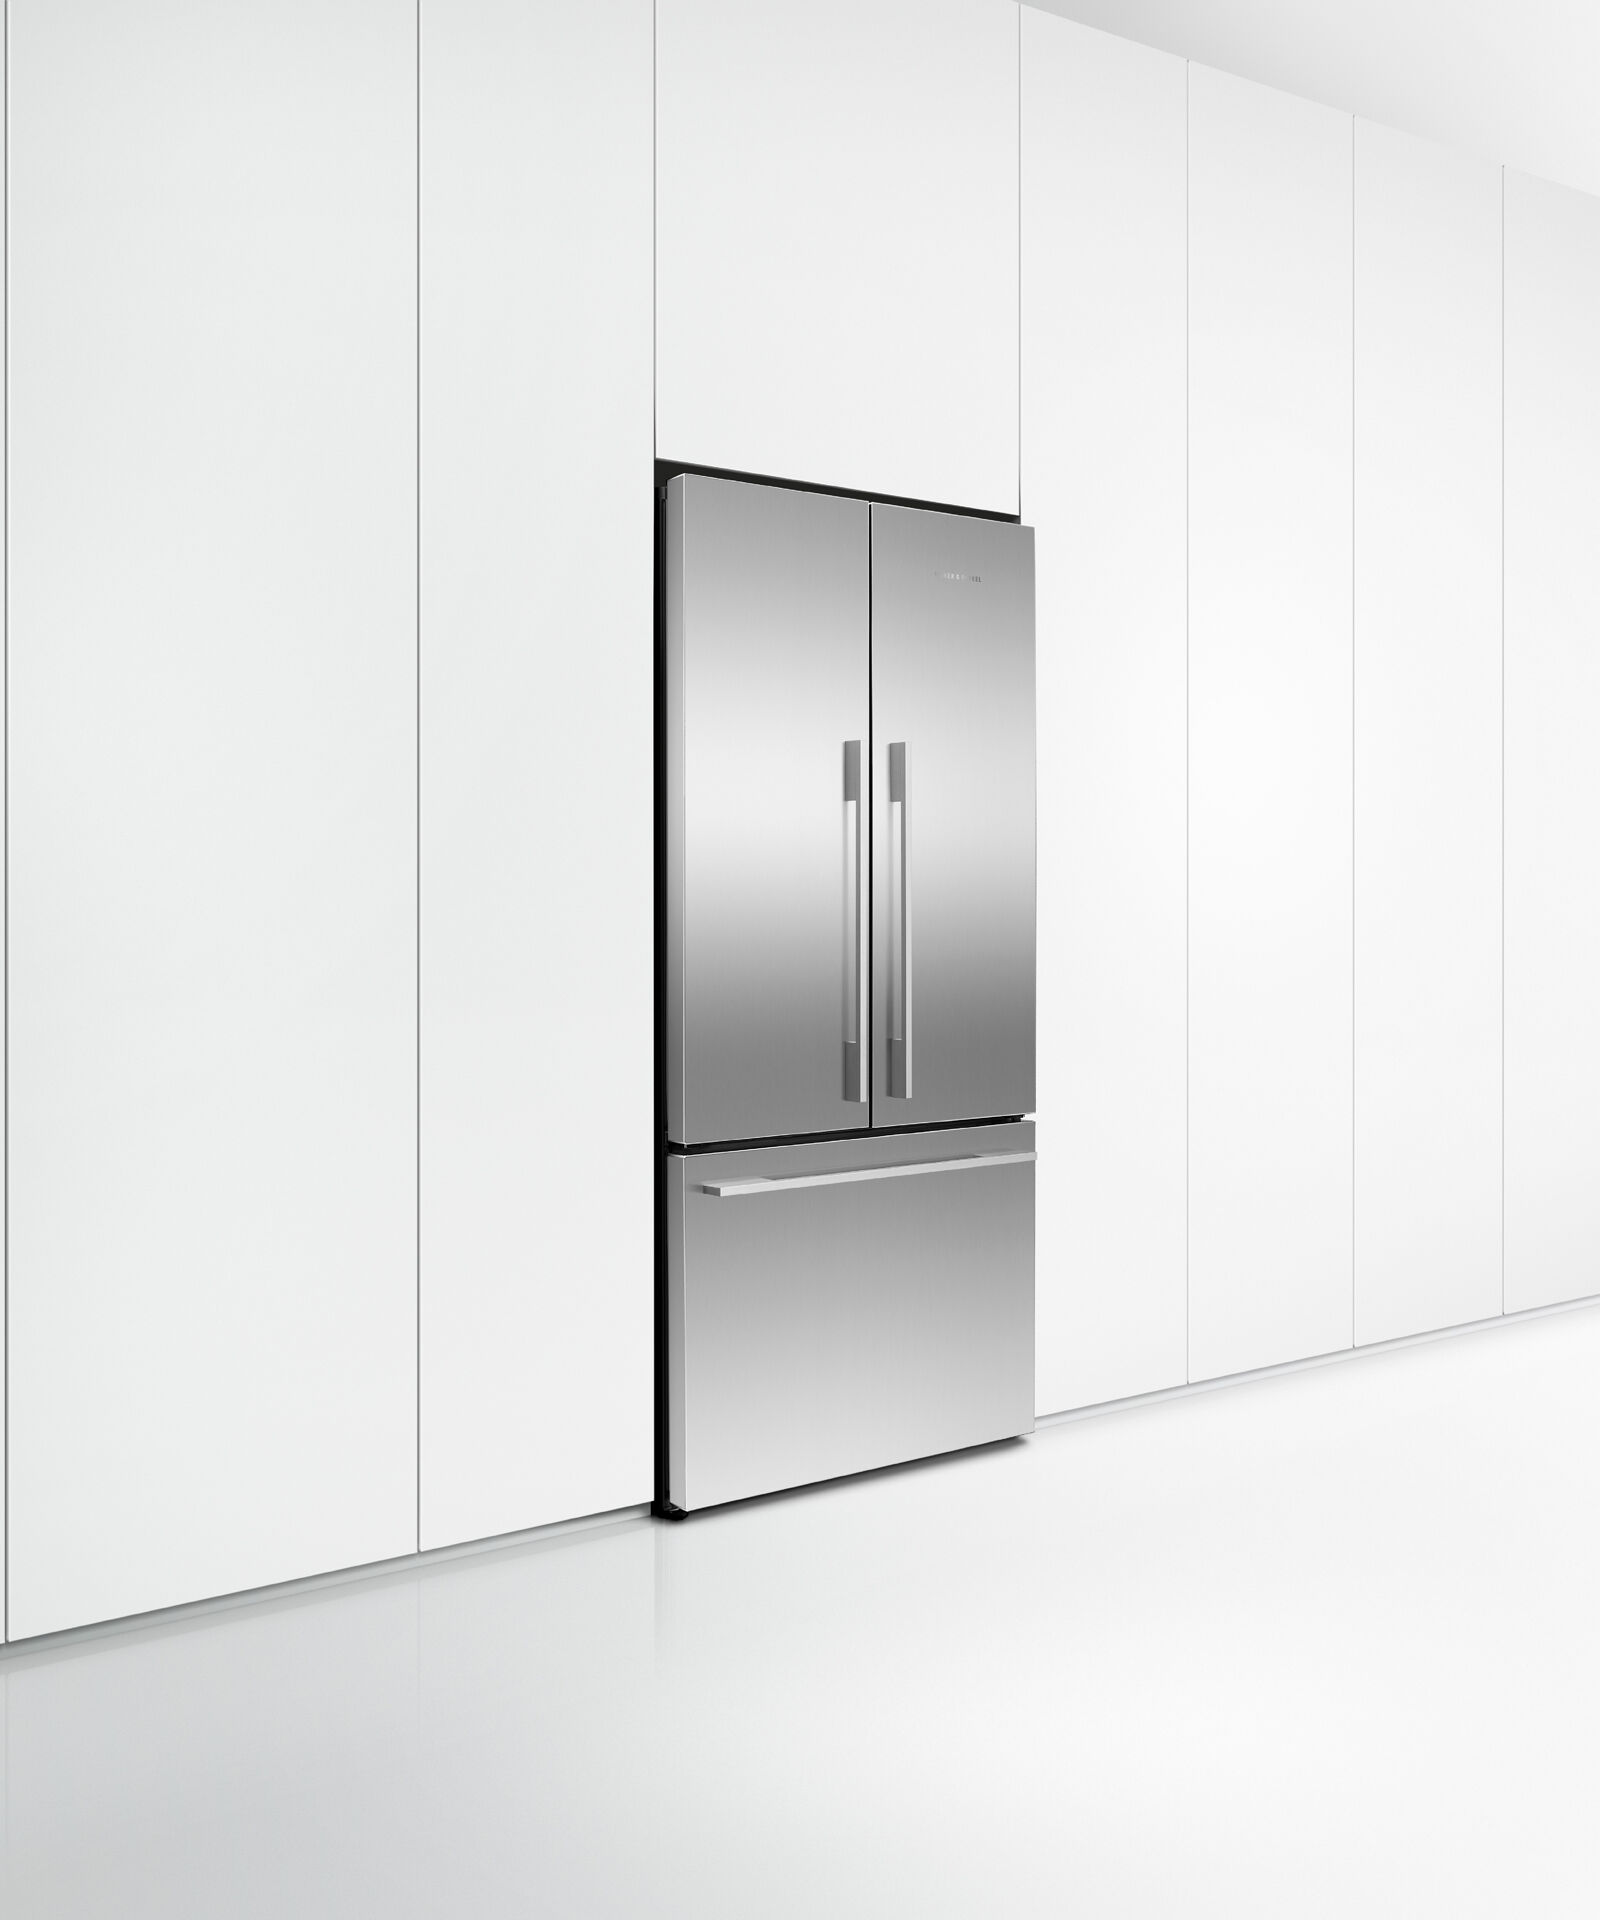 Freestanding French Door Refrigerator Freezer, 90cm gallery image 5.0